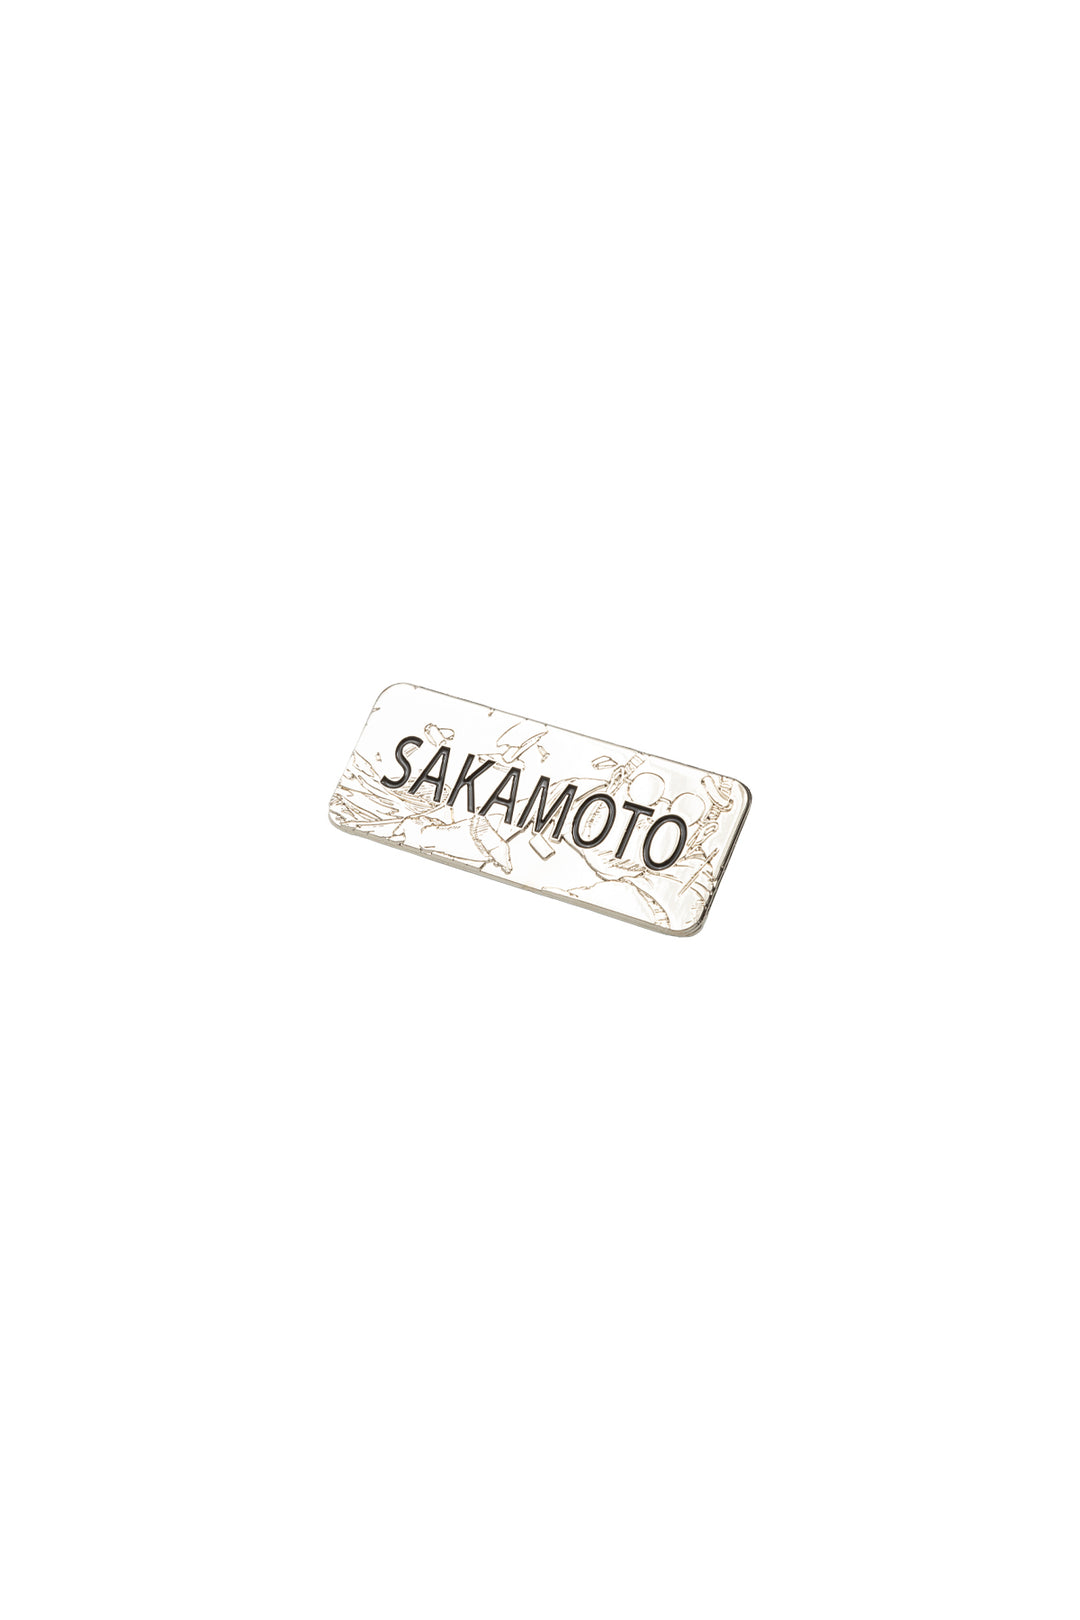 Sakamoto Days Apron with 'Sakamoto' Name Tag